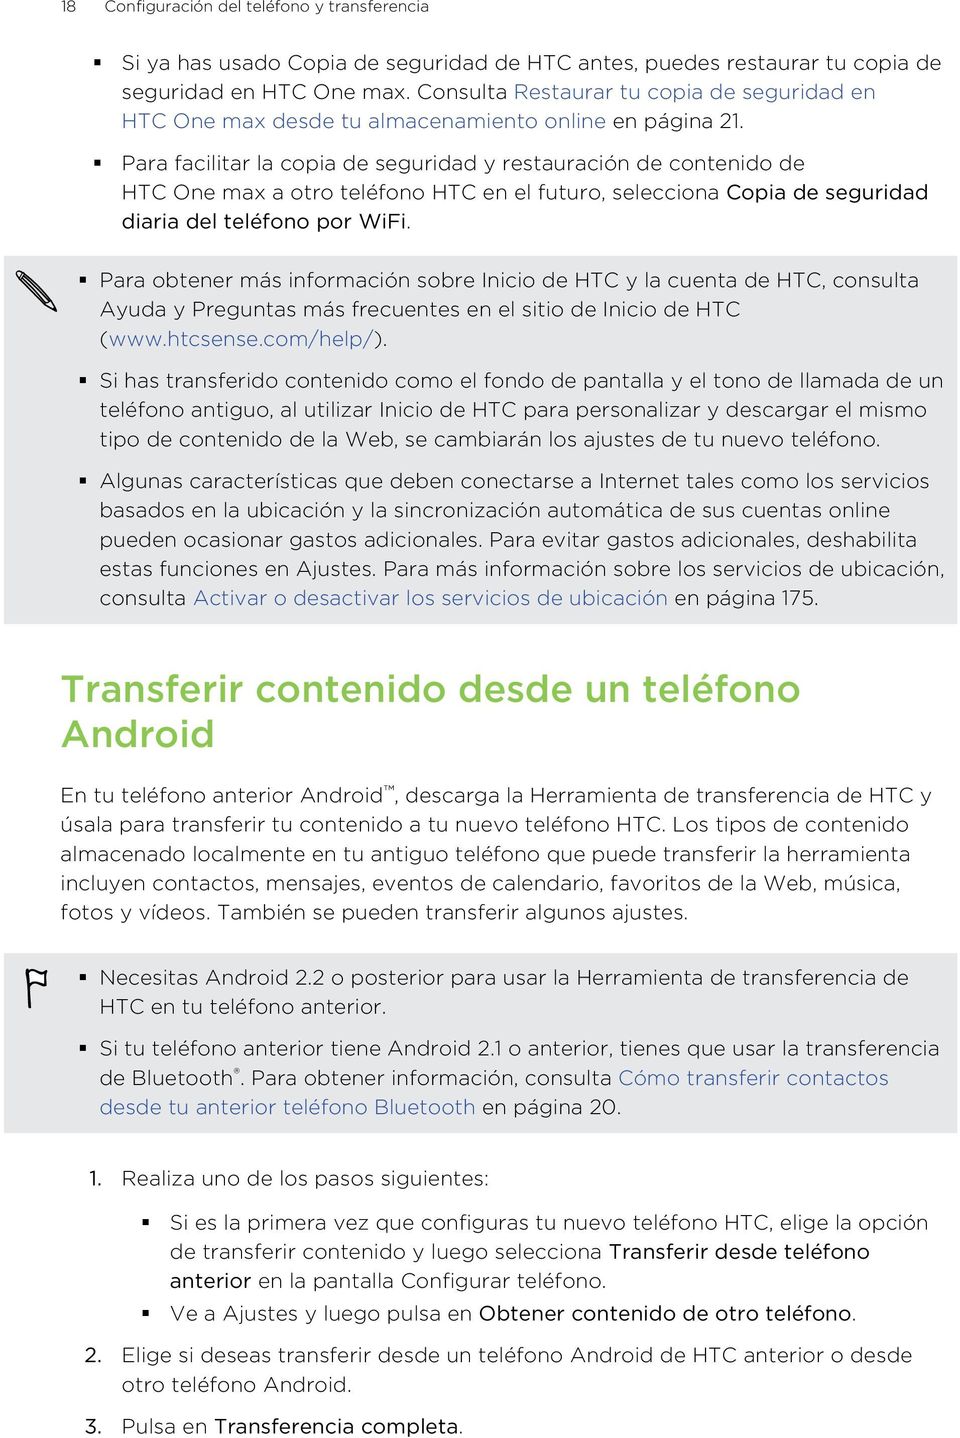 Para facilitar la copia de seguridad y restauración de contenido de HTC One max a otro teléfono HTC en el futuro, selecciona Copia de seguridad diaria del teléfono por WiFi.